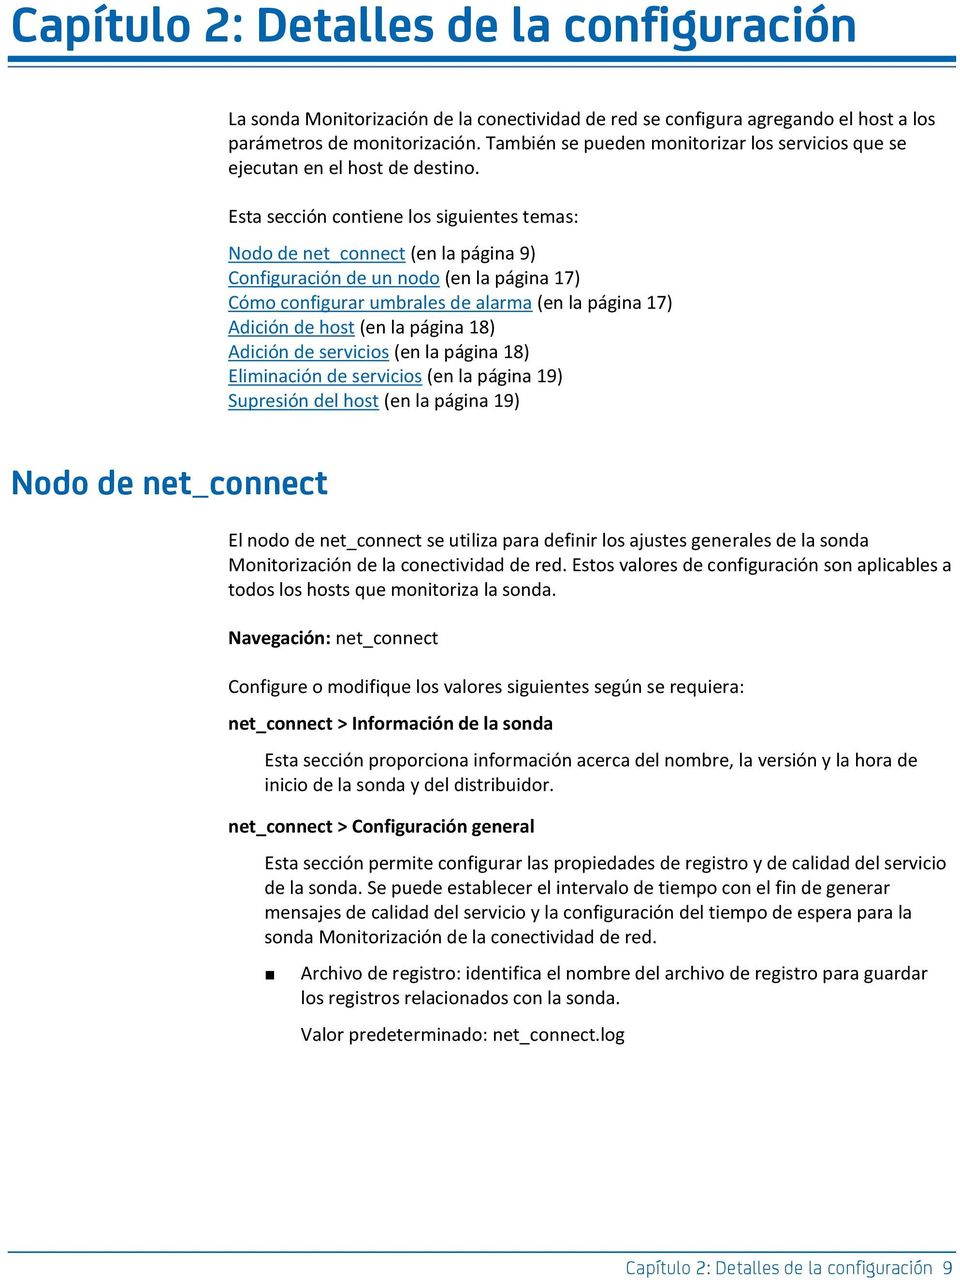 Esta sección contiene los siguientes temas: Nodo de net_connect (en la página 9) Configuración de un nodo (en la página 17) Cómo configurar umbrales de alarma (en la página 17) Adición de host (en la